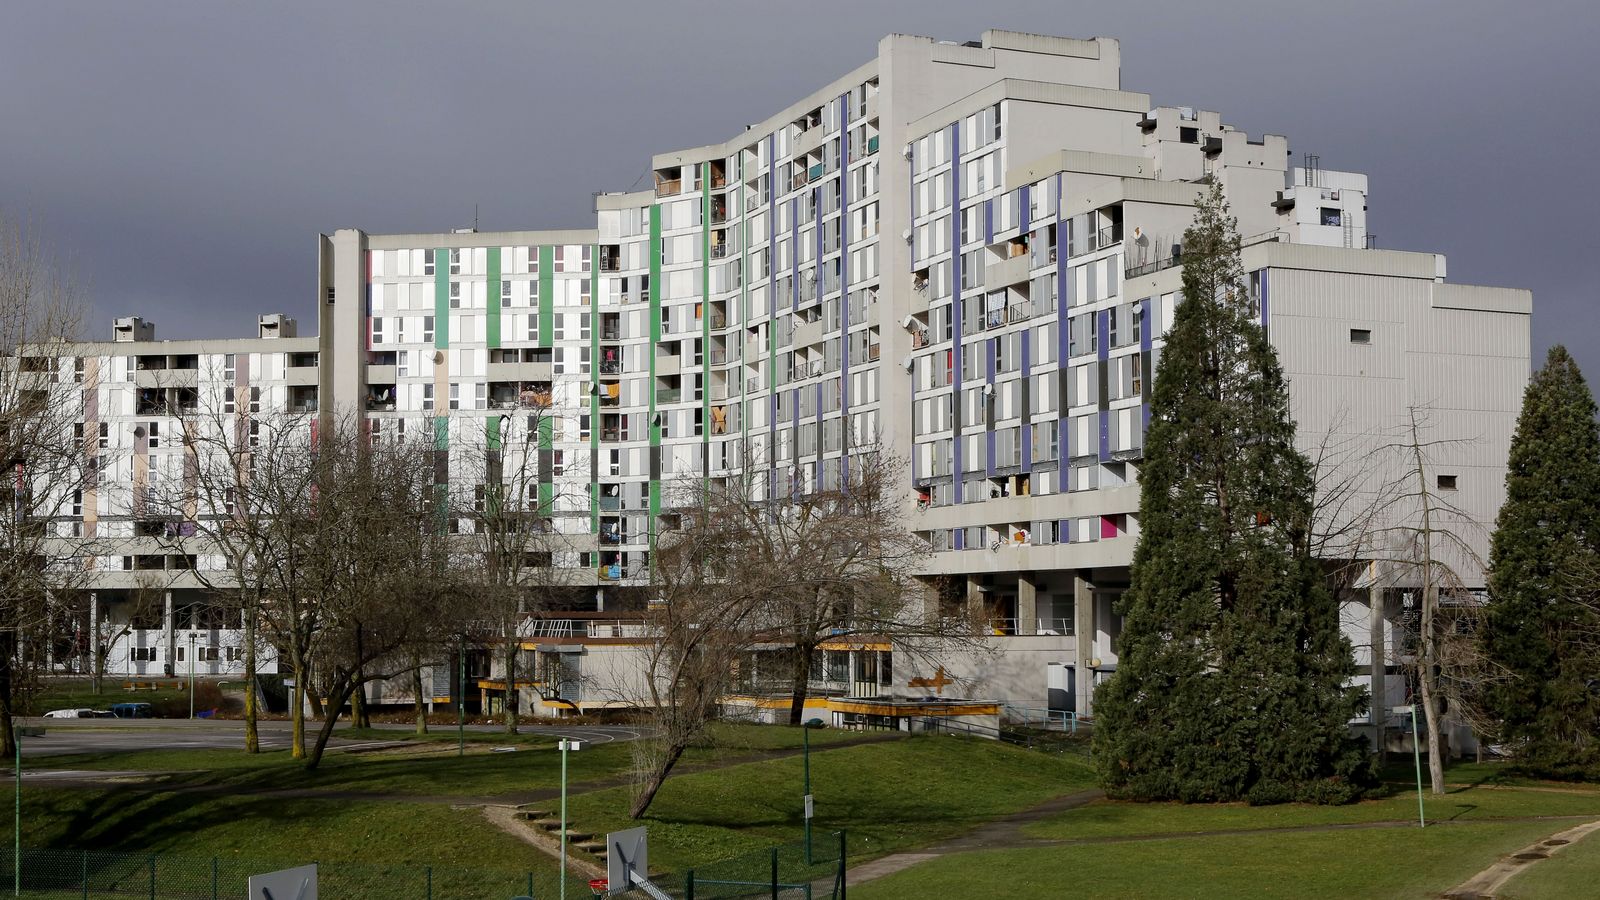 Villeneuve, quartier de l Arlequin. Grenoble, (Isère), le 22 octobre 2014
Auteurs  : Pascal Fayolle/SIPA
Numéro de reportage  : 00696190_000025